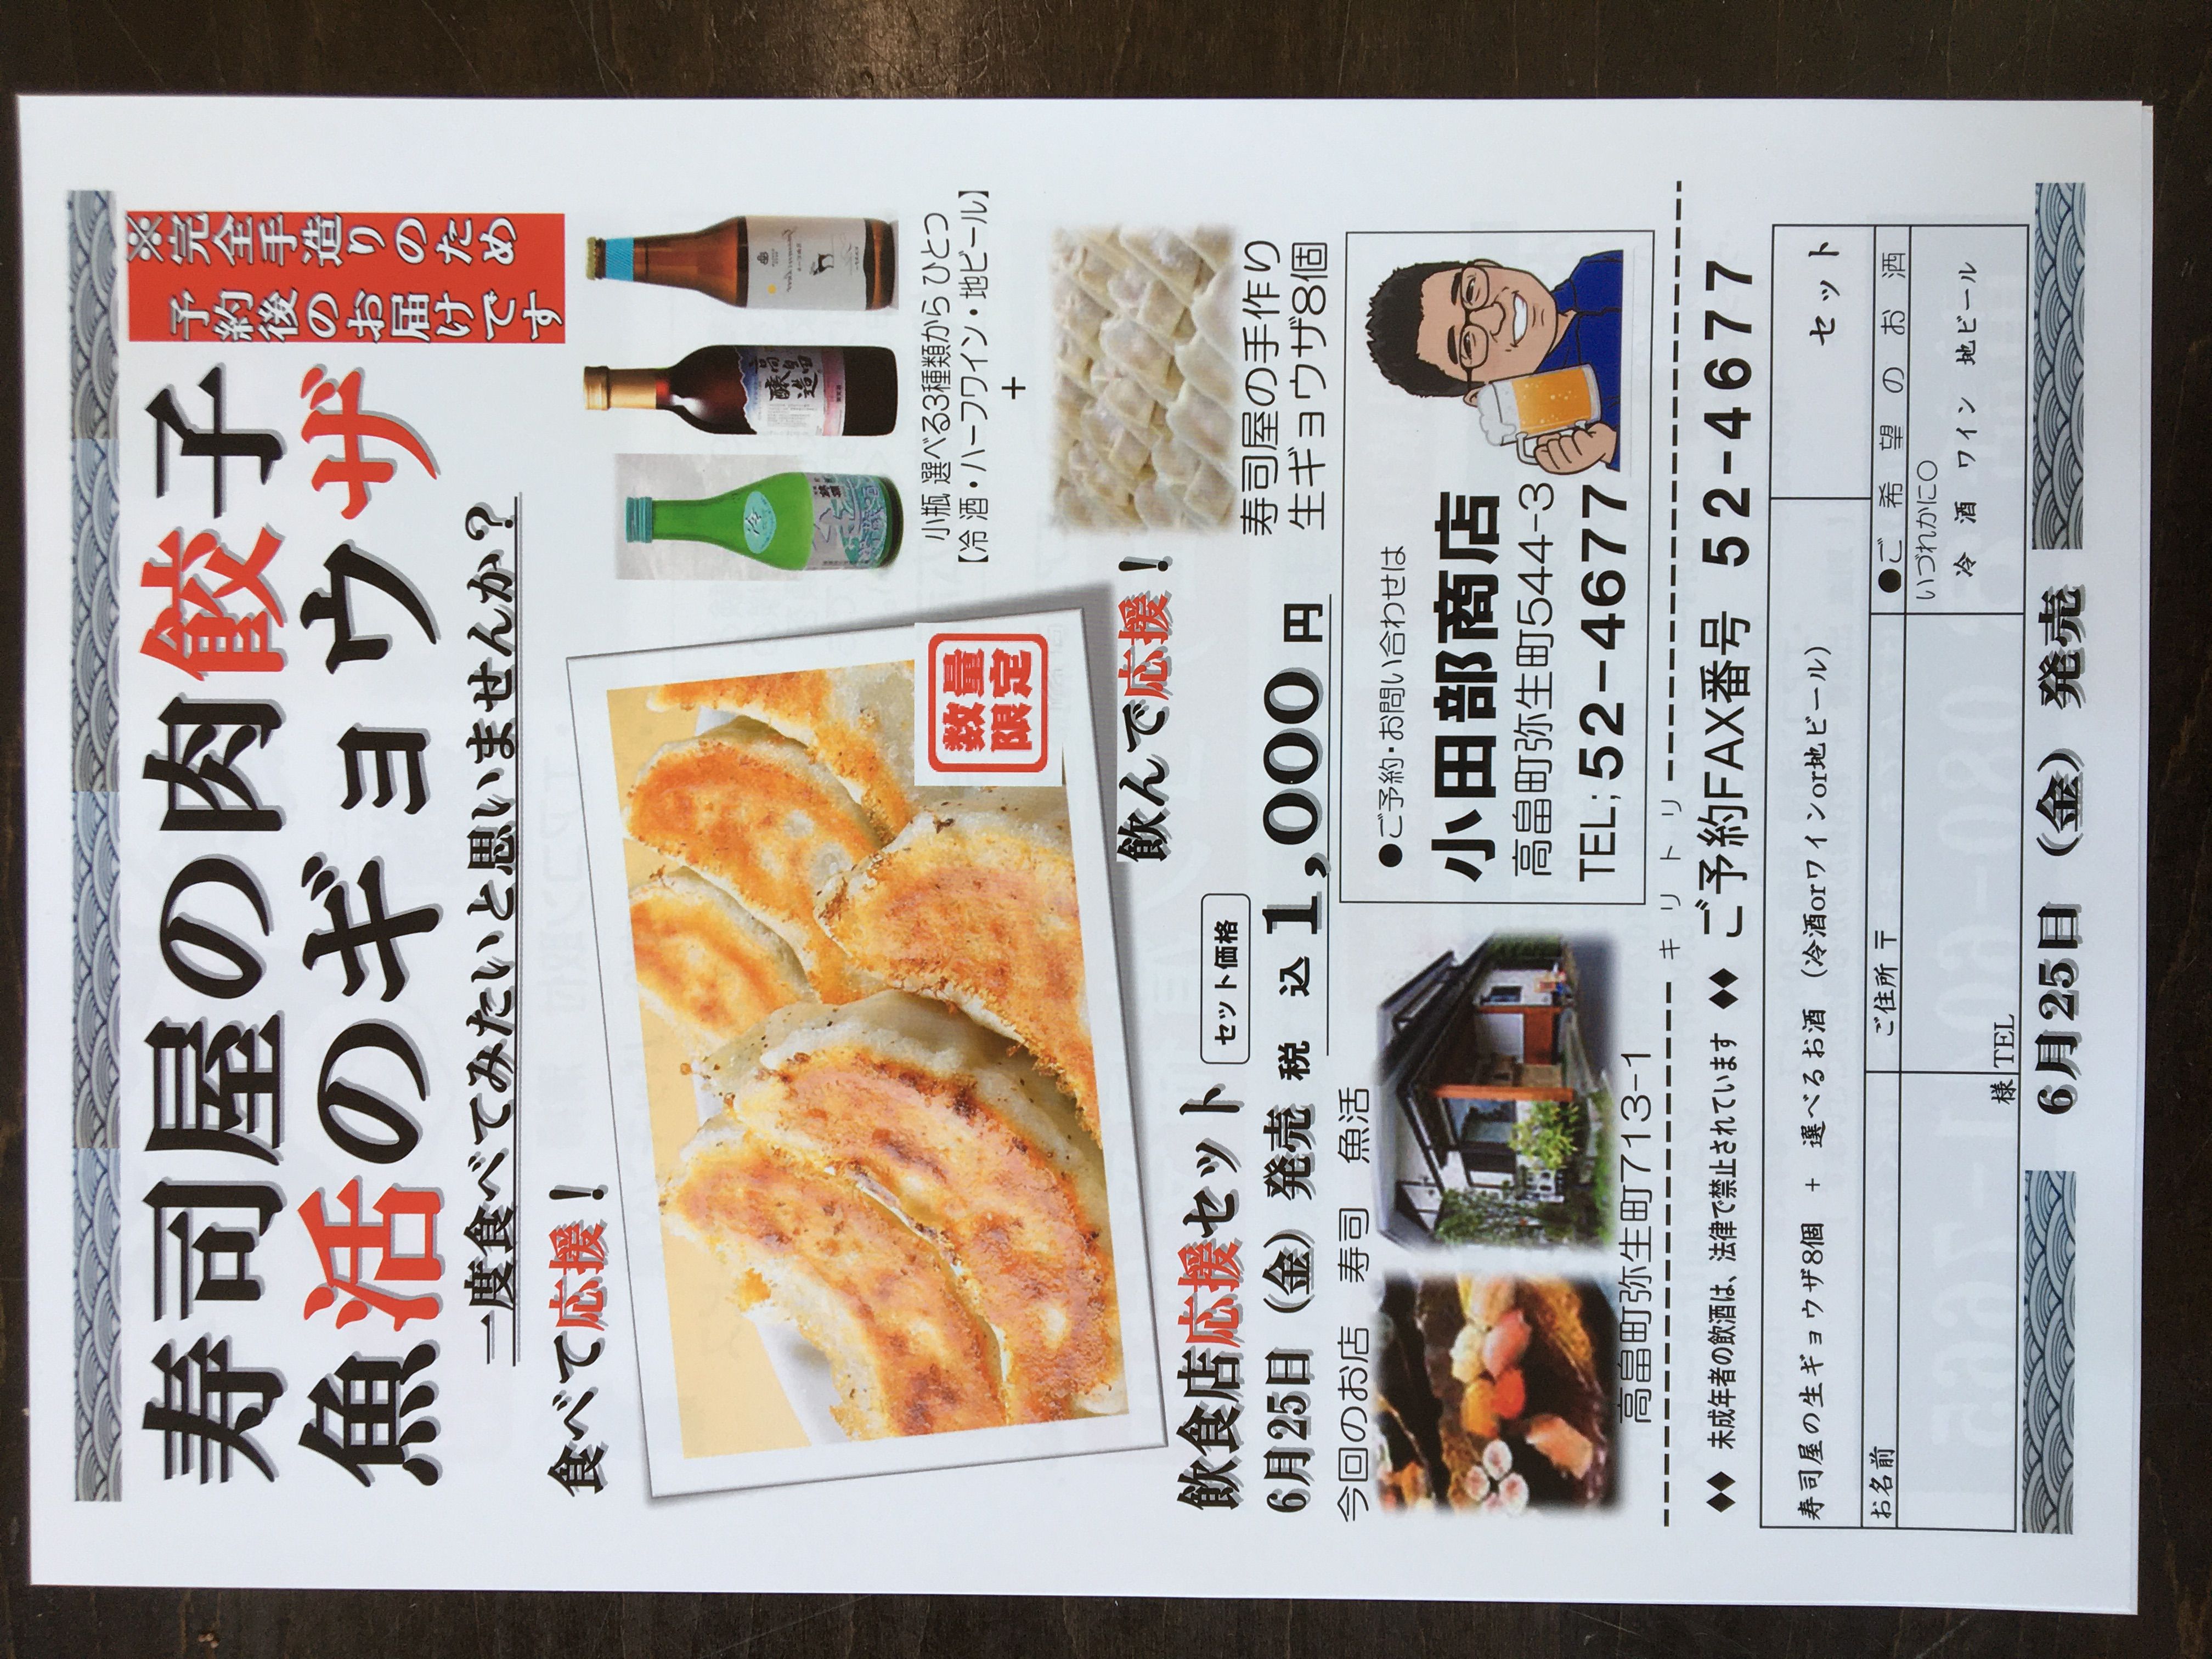 はい！小田部商店です！寿司屋の餃子！魚活の餃子！お酒がついて1,000円